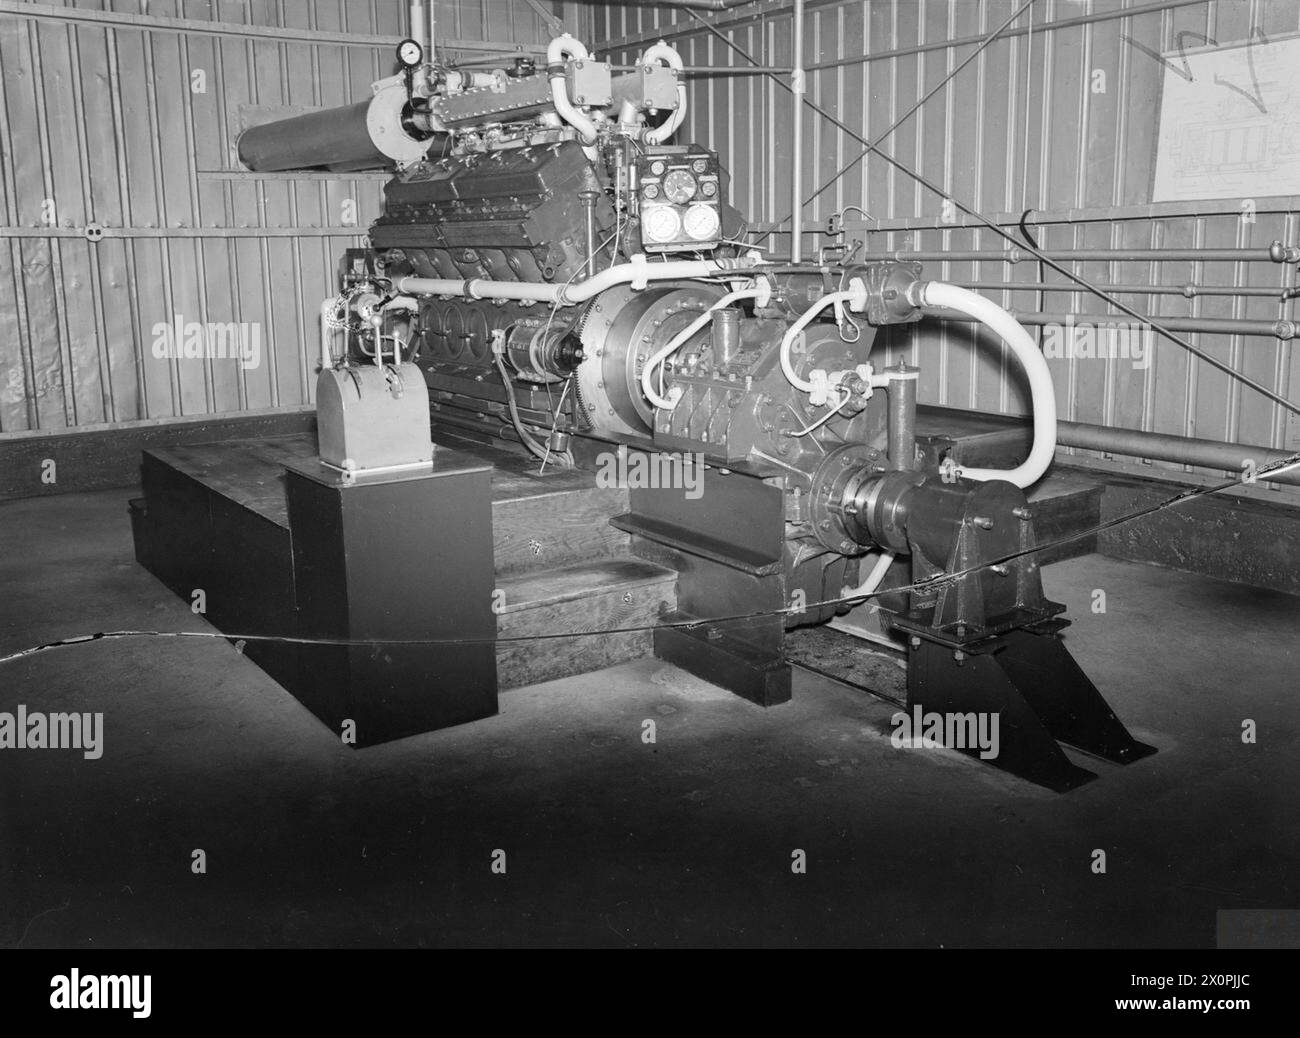 SCUOLA DI MOTORI A COMBUSTIONE INTERNA DELLA ROYAL NAVY. LUGLIO 1945, HELLENSBURGH, ROSNEATH, SCOZIA. - Vano motore diesel (Paxman) Foto Stock